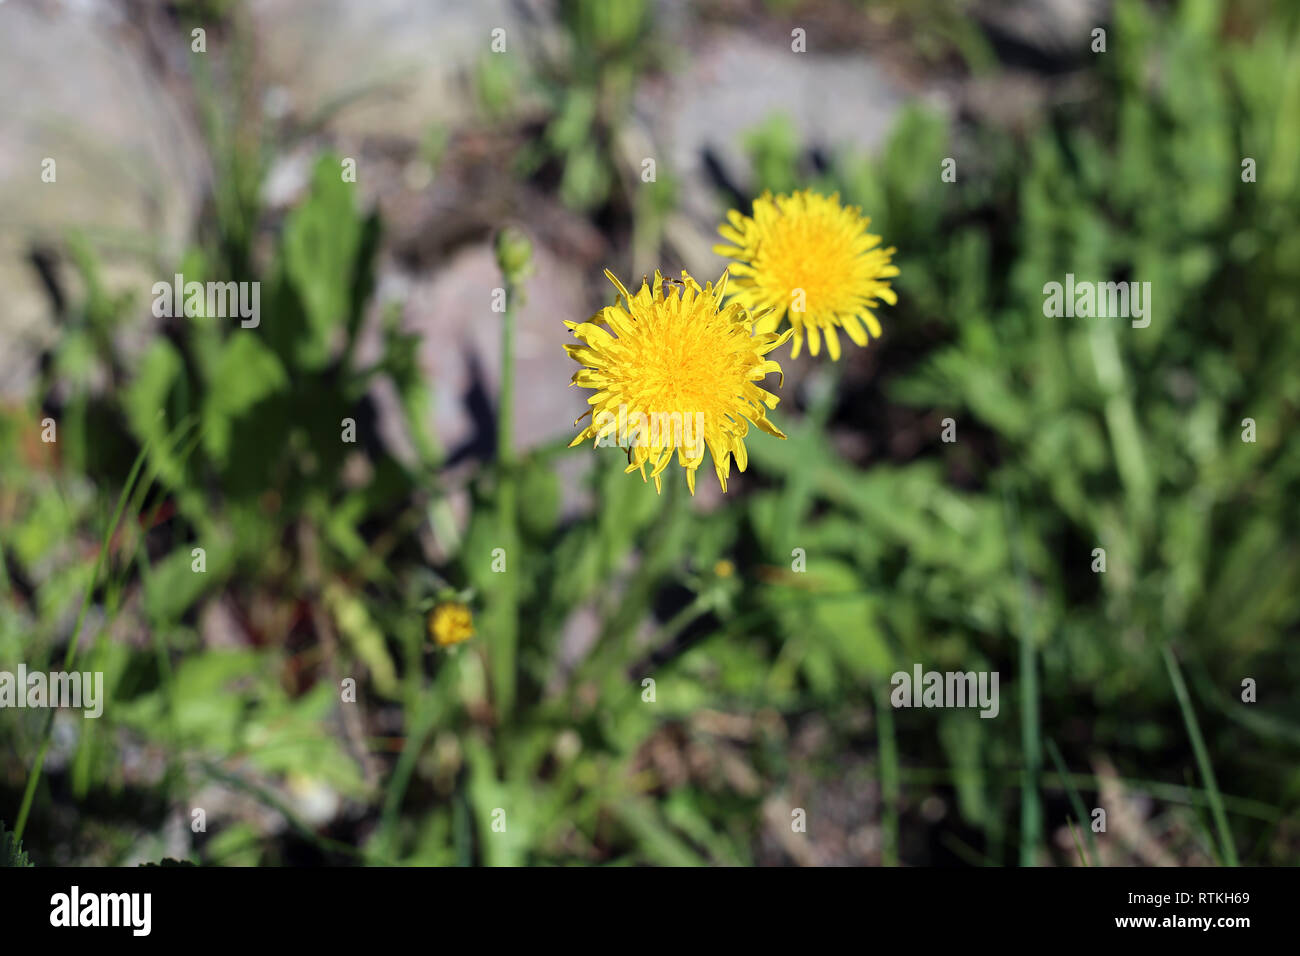 Bellissimo il tarassaco giallo su un prato verde. Fotografato in un parco durante una soleggiata giornata di primavera in Finlandia. Bella immagine a colori della bellezza della natura Foto Stock